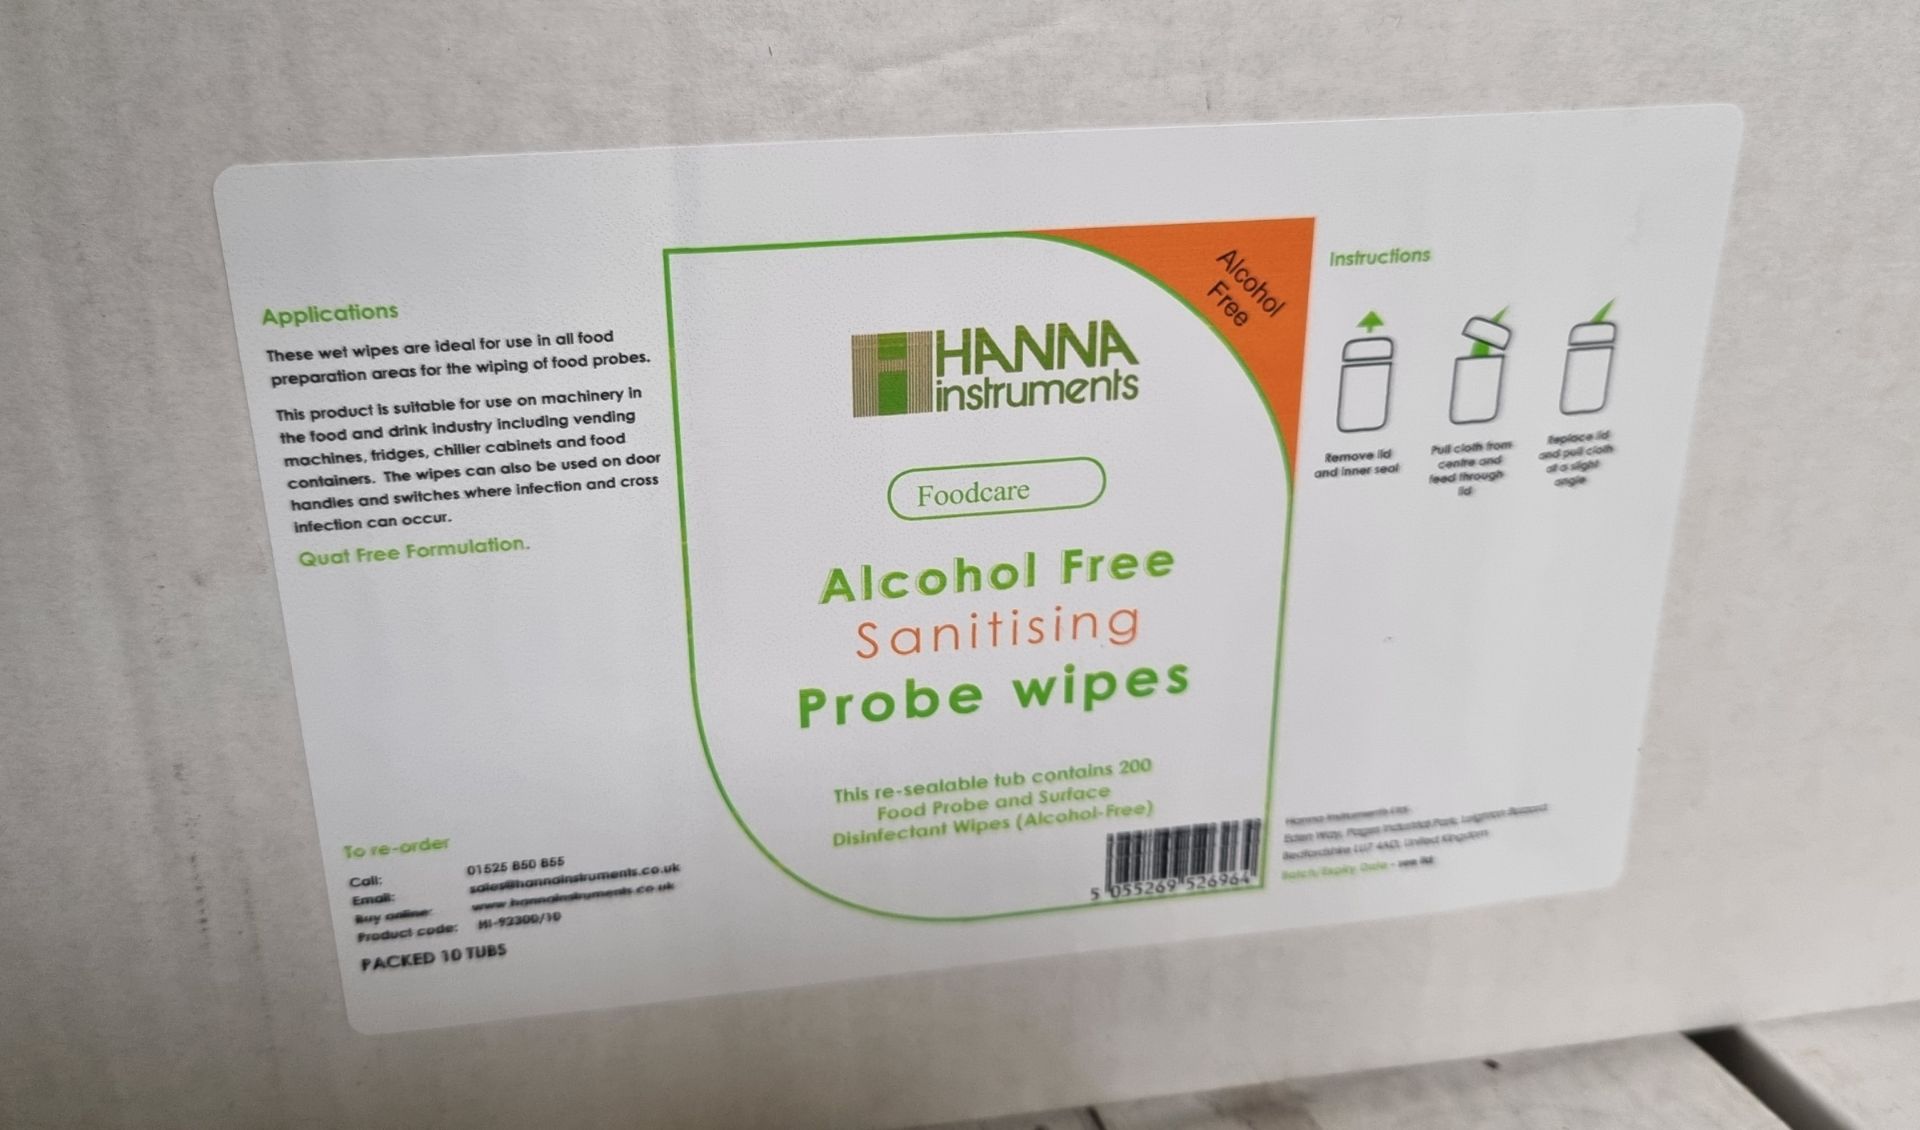 36x Boxes of Henna alcohol free wipes - probe wipes - 10x tubs per box (300 tubs) - Bild 2 aus 3